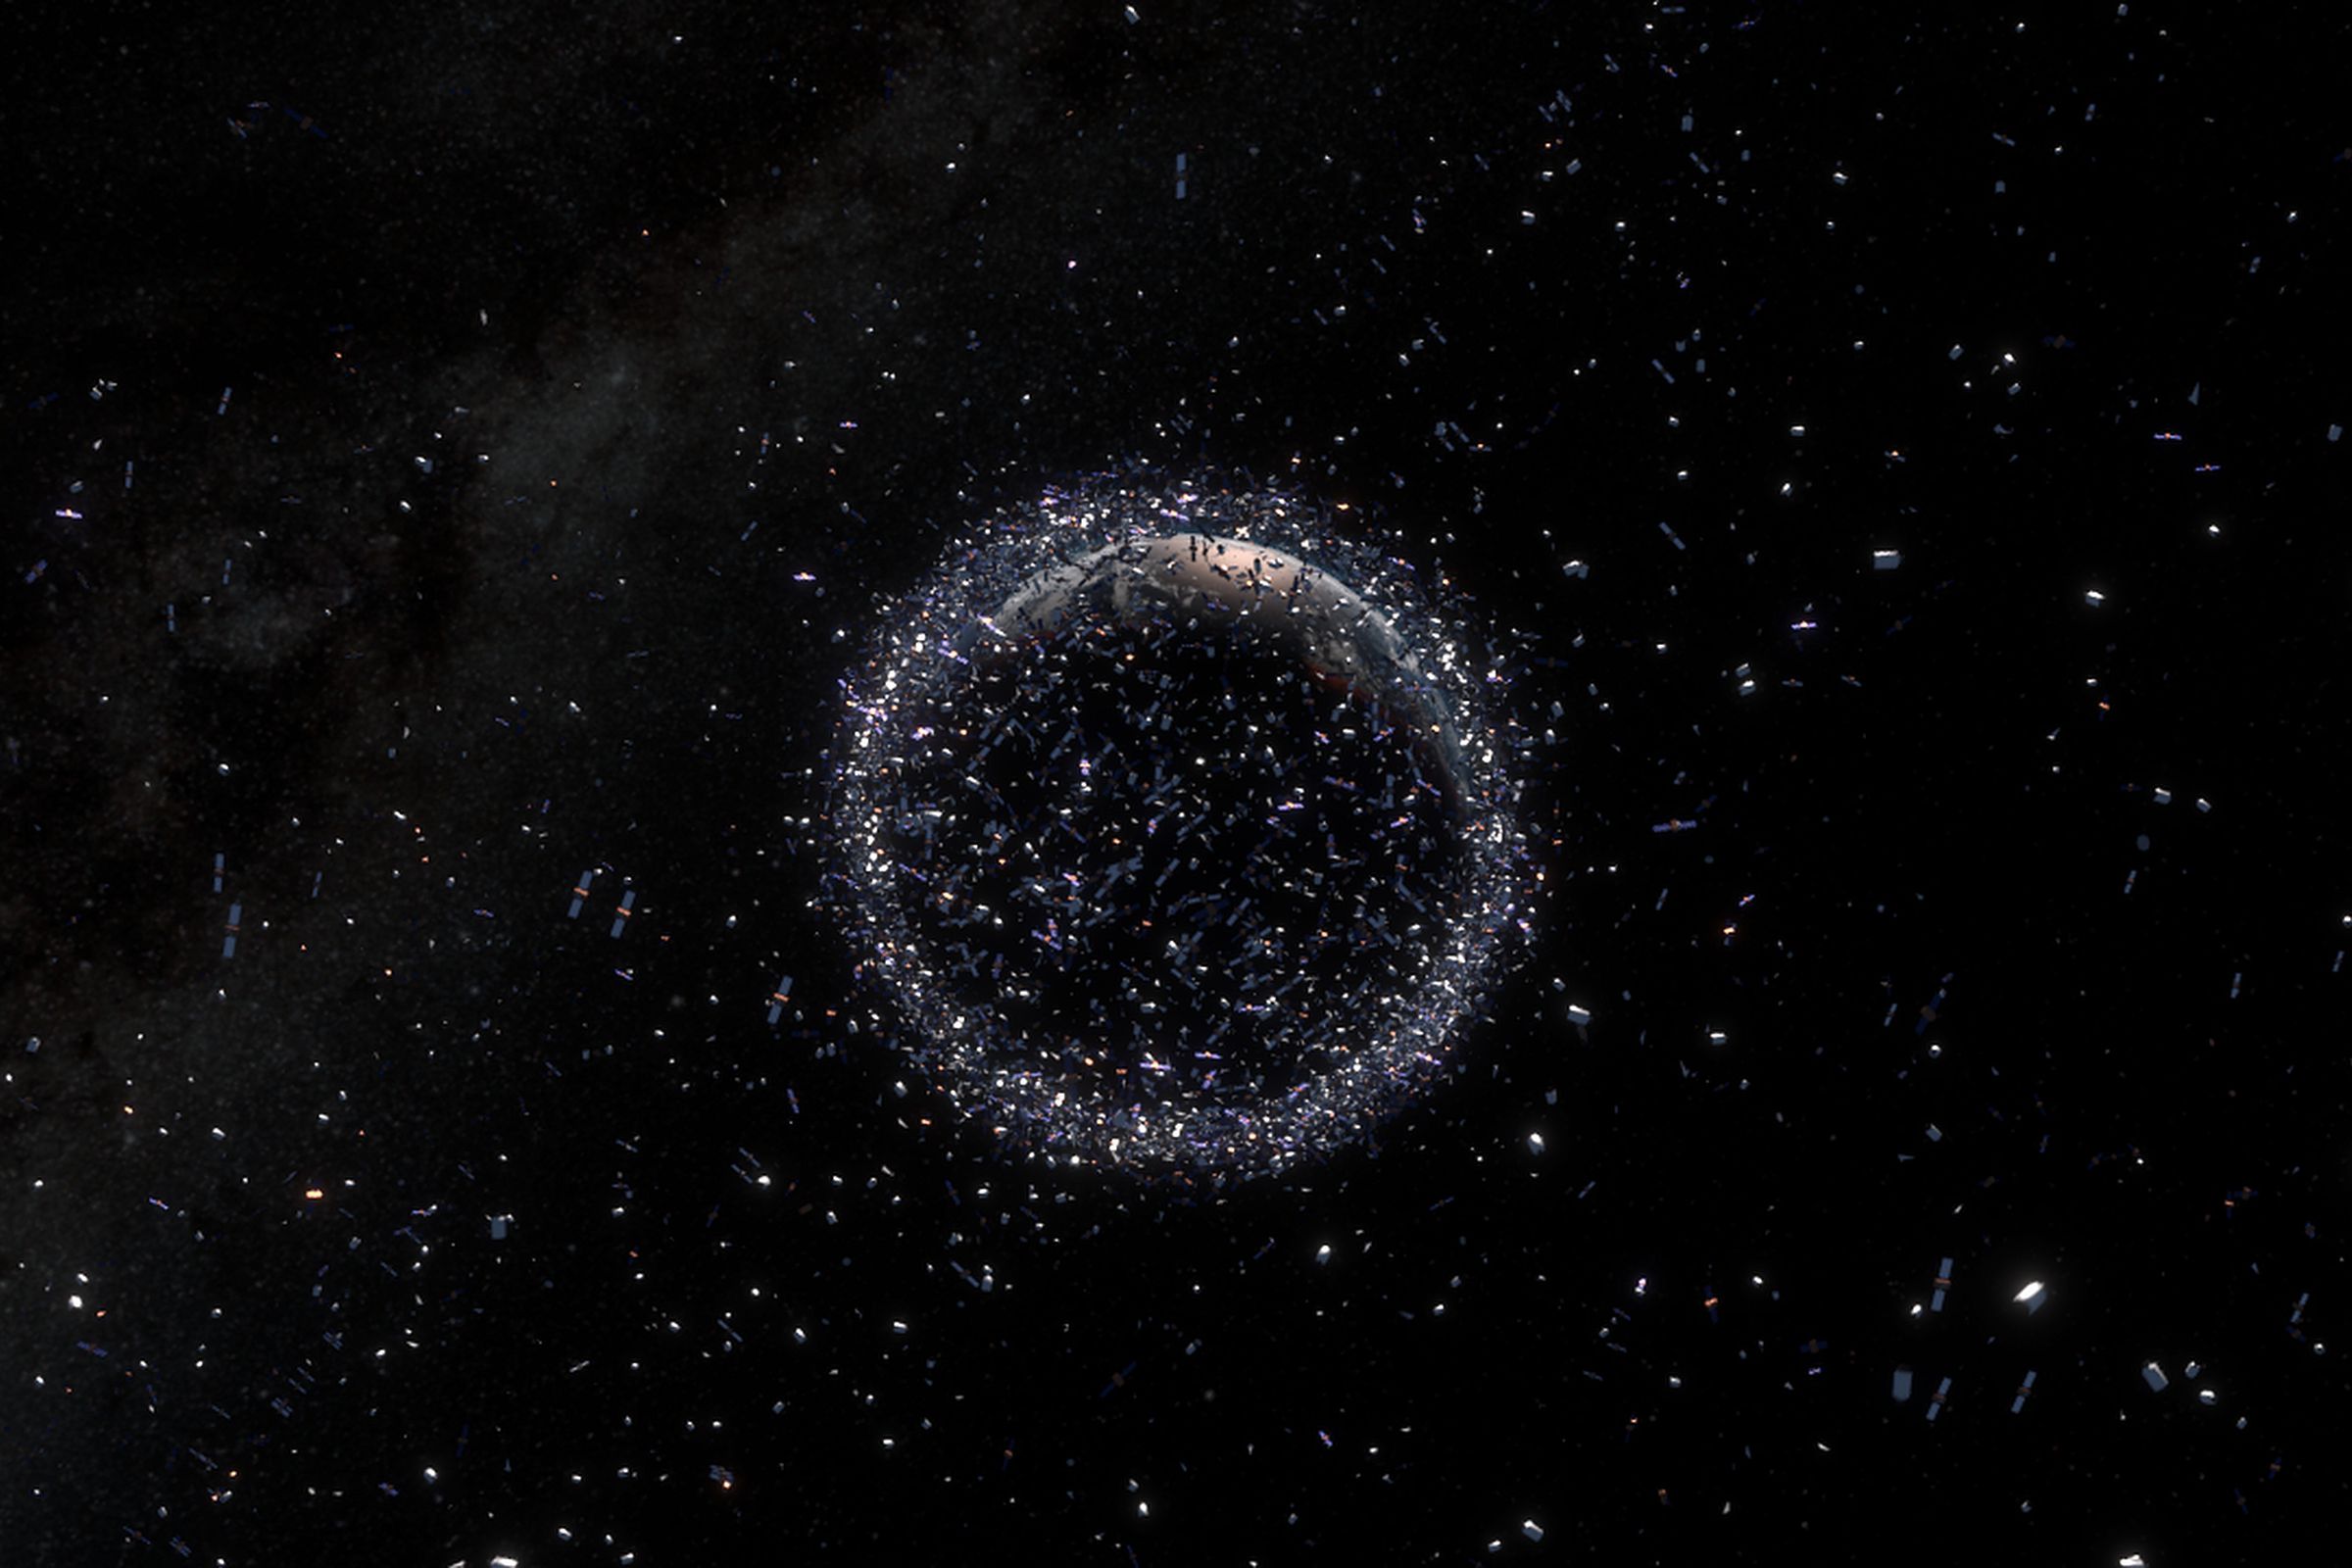 An artistic rendering of space debris in orbit around Earth